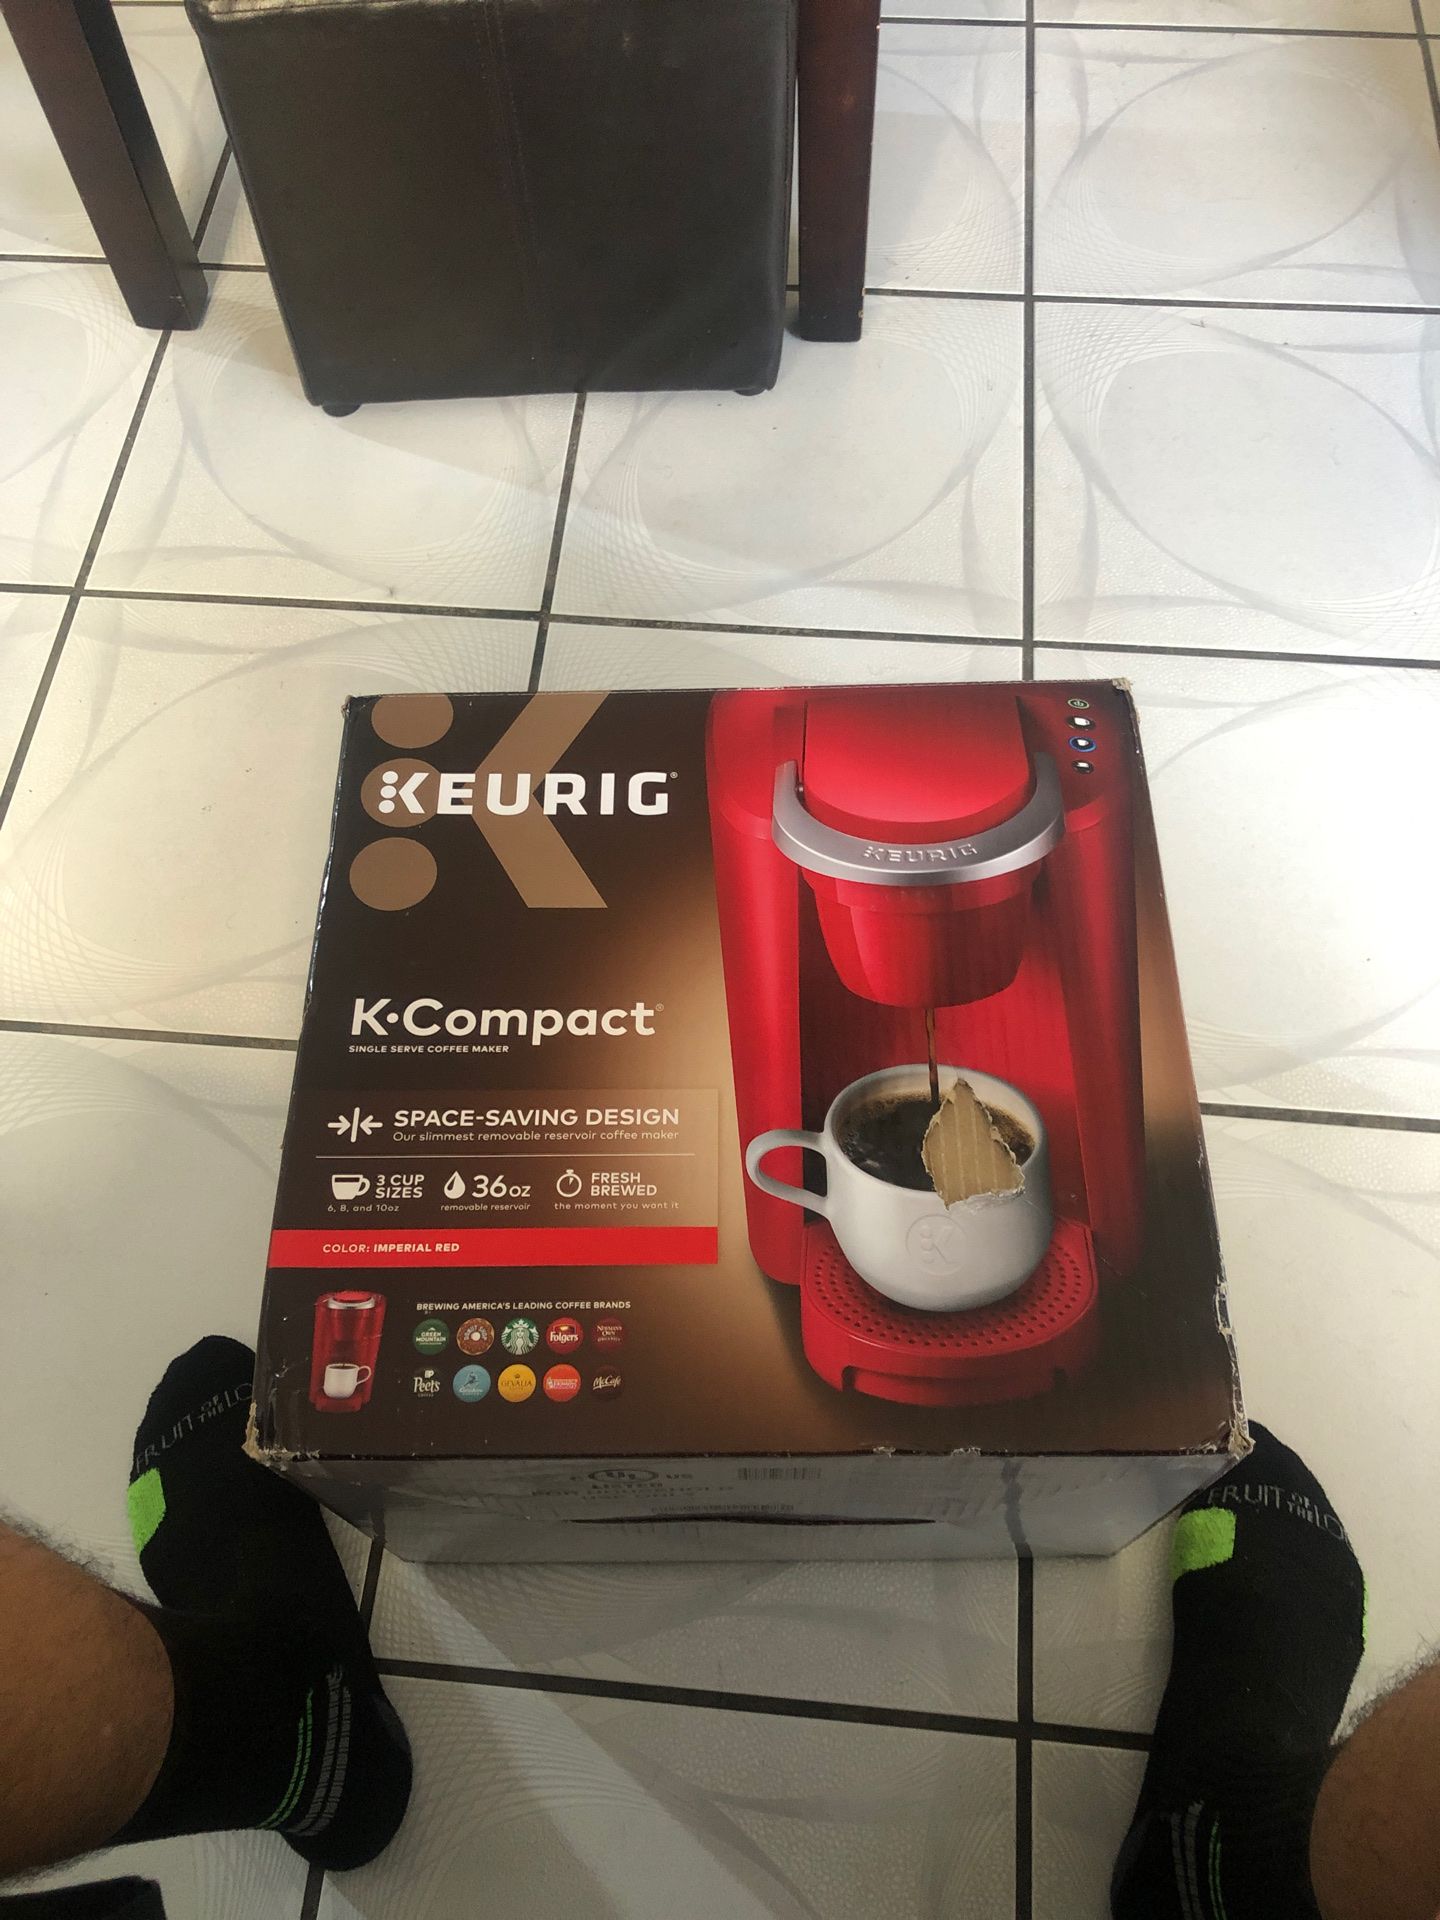 Keurig K Compact coffee maker